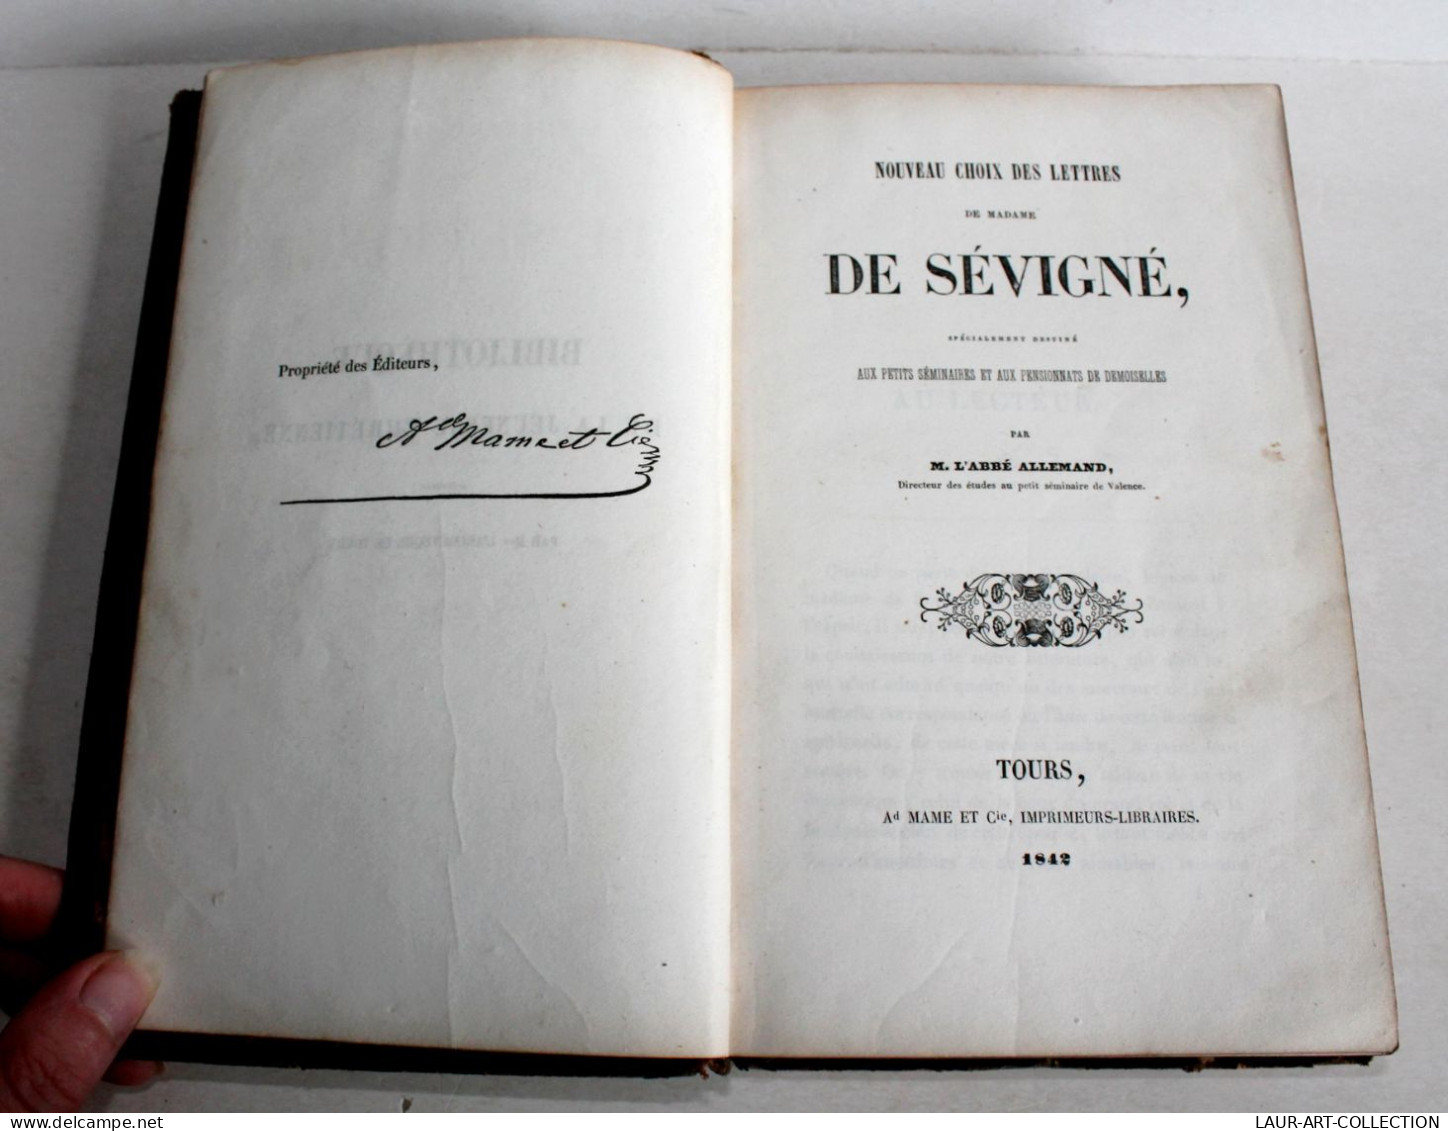 NOUVEAU CHOIX DES LETTRES Mme DE SEVIGNE SEMINAIRES PENSIONNAT Par ALLEMAND 1842 / LIVRE ANCIEN XIXe SIECLE (1303.19) - 1801-1900